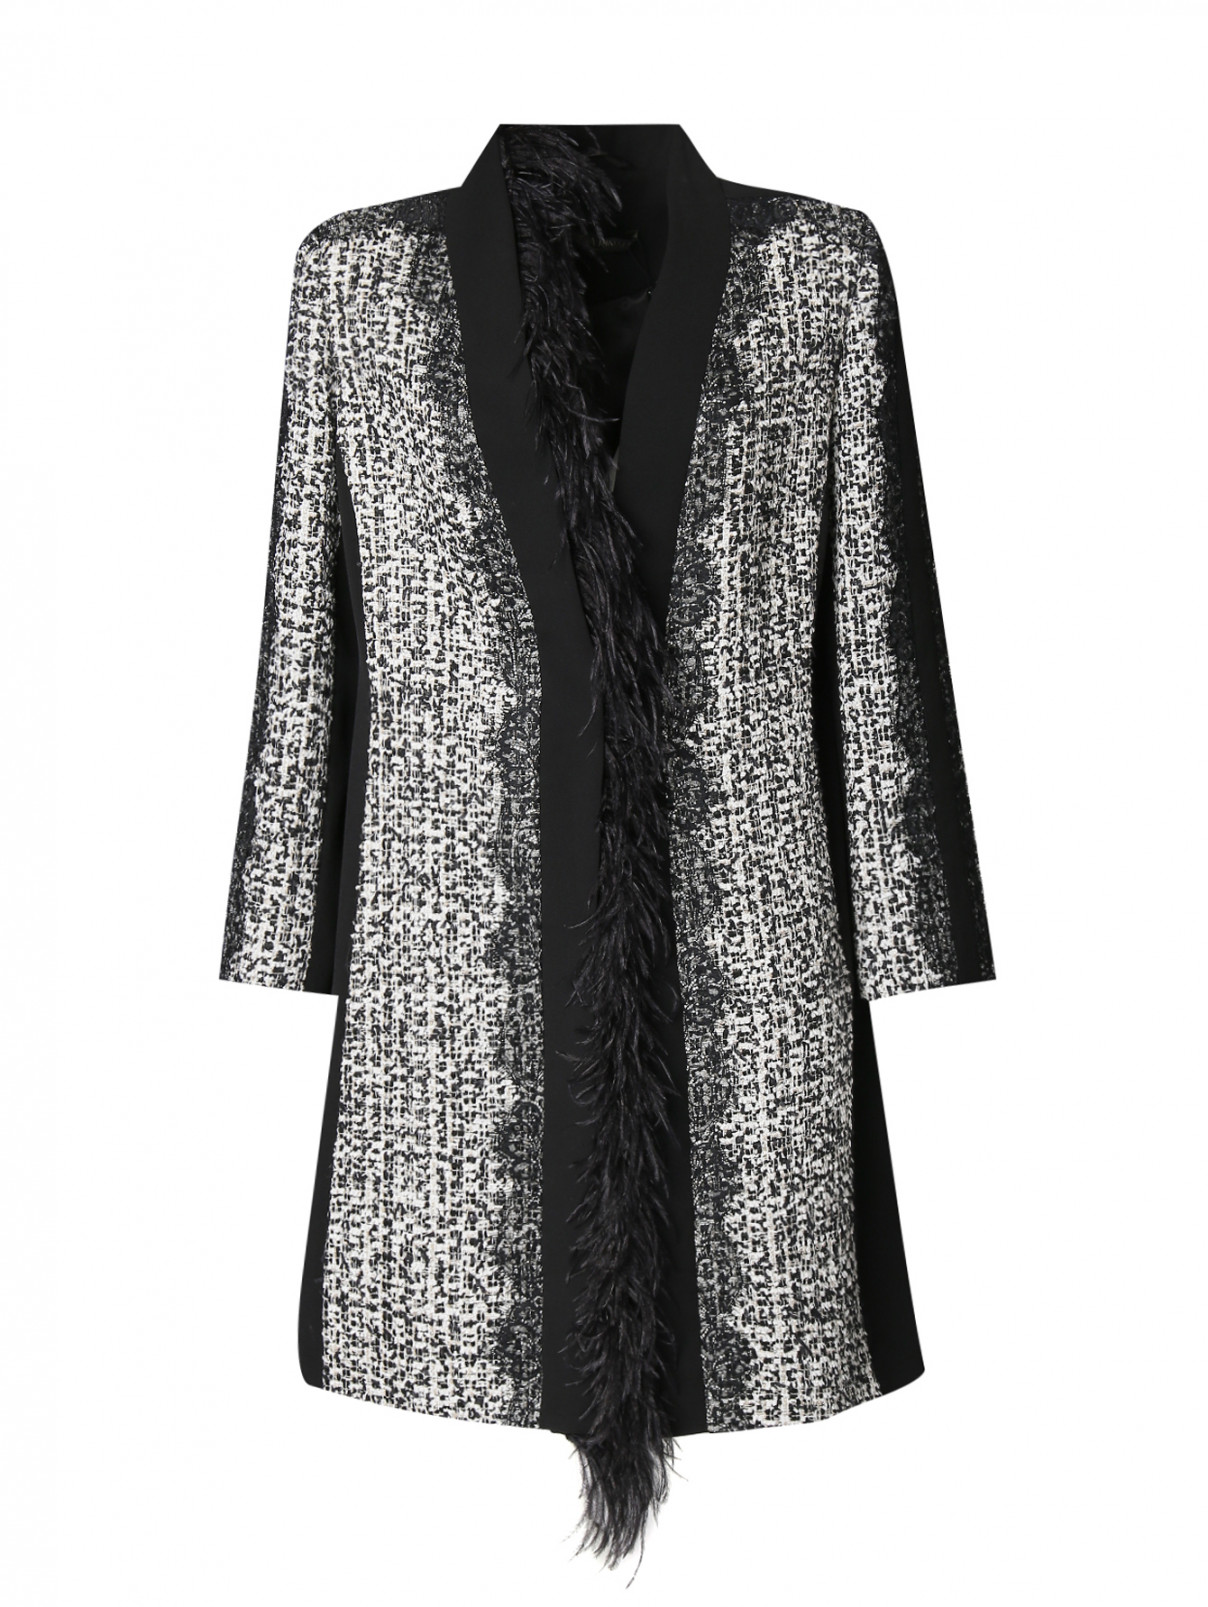 Полупальто с вышивкой и декором Marina Rinaldi  –  Общий вид  – Цвет:  Узор